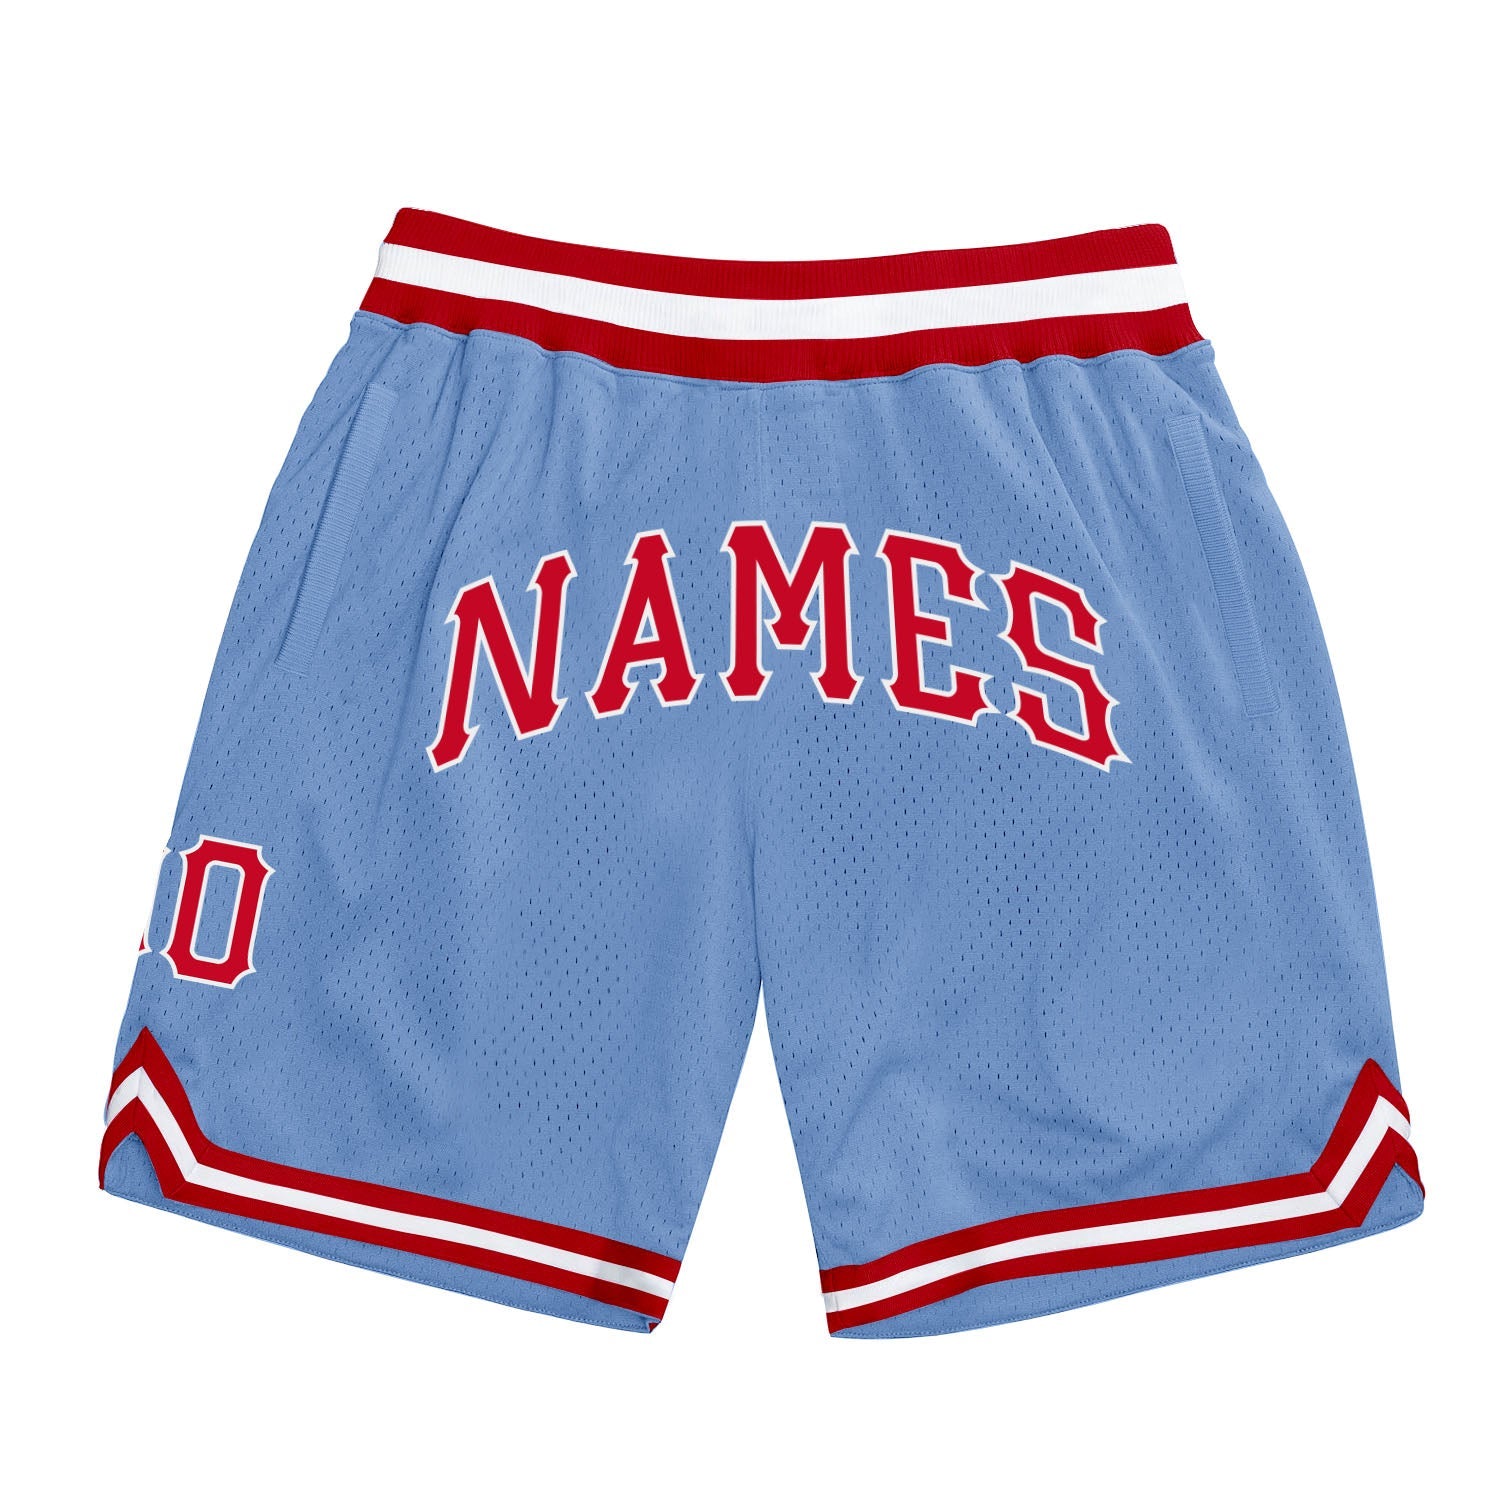 Shorts de basquete autênticos, azul claro, vermelho e branco, personalizados